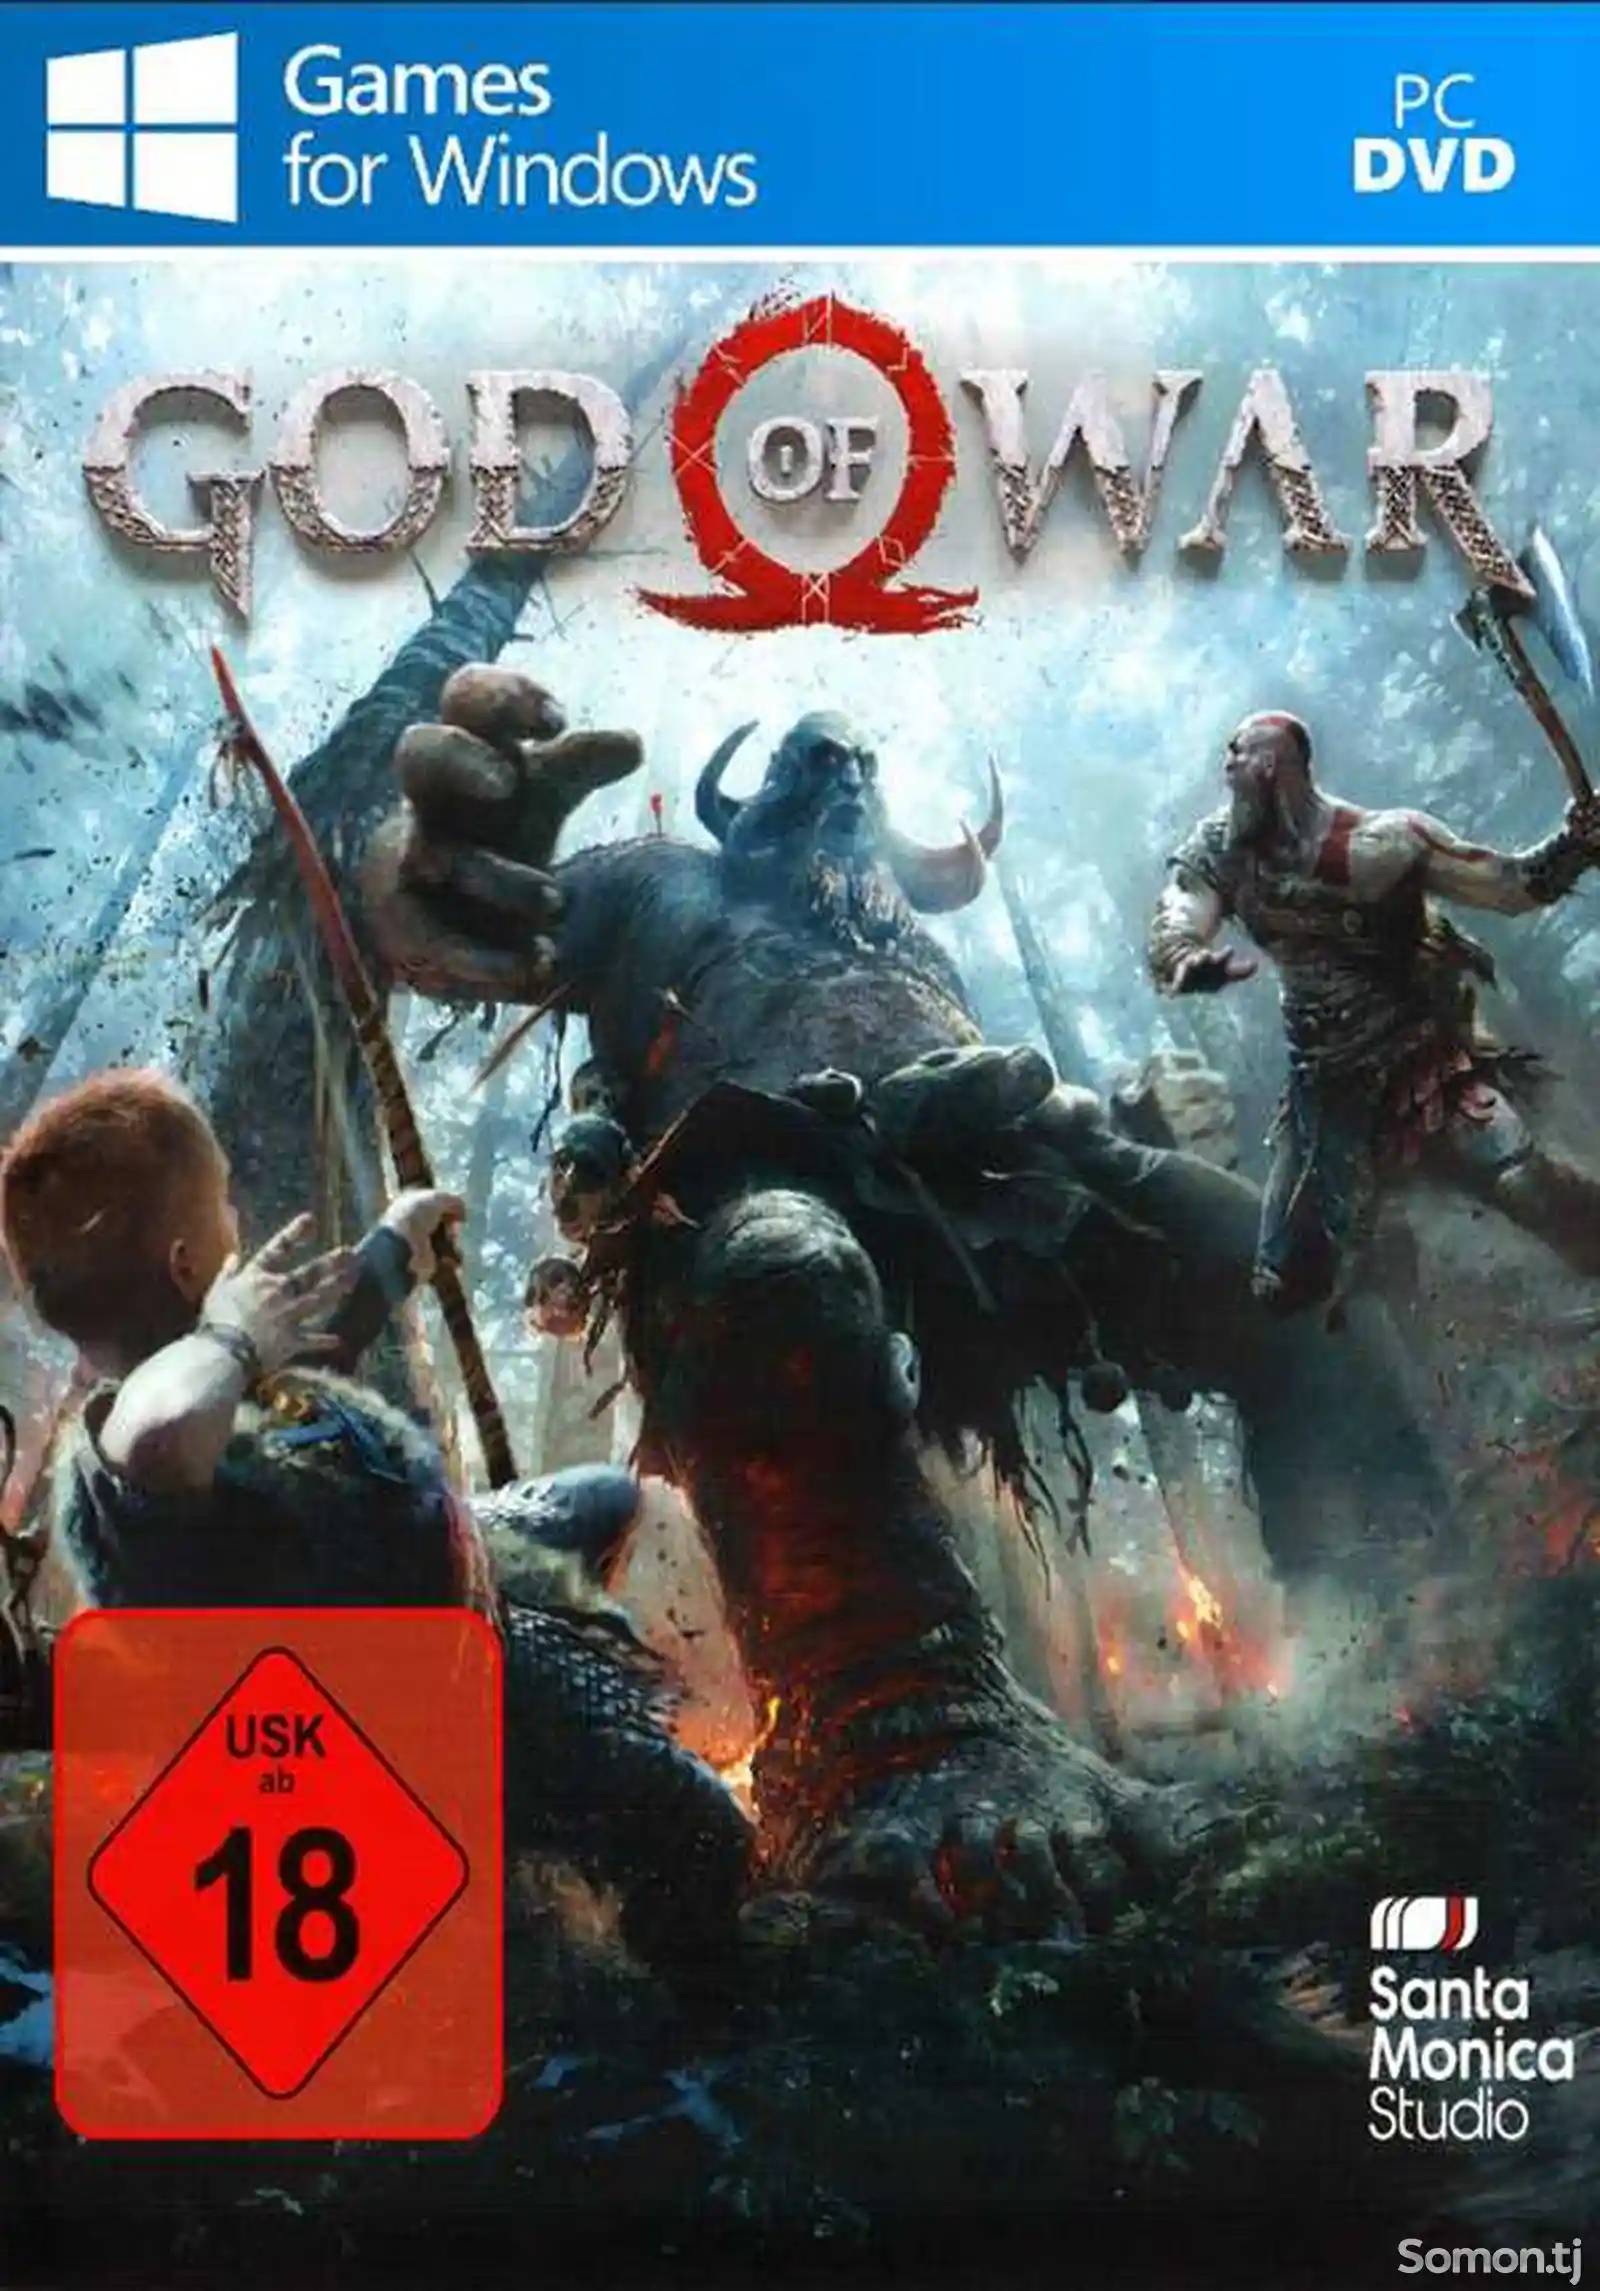 Игра God of war 4 для компьютера-пк-pc-1